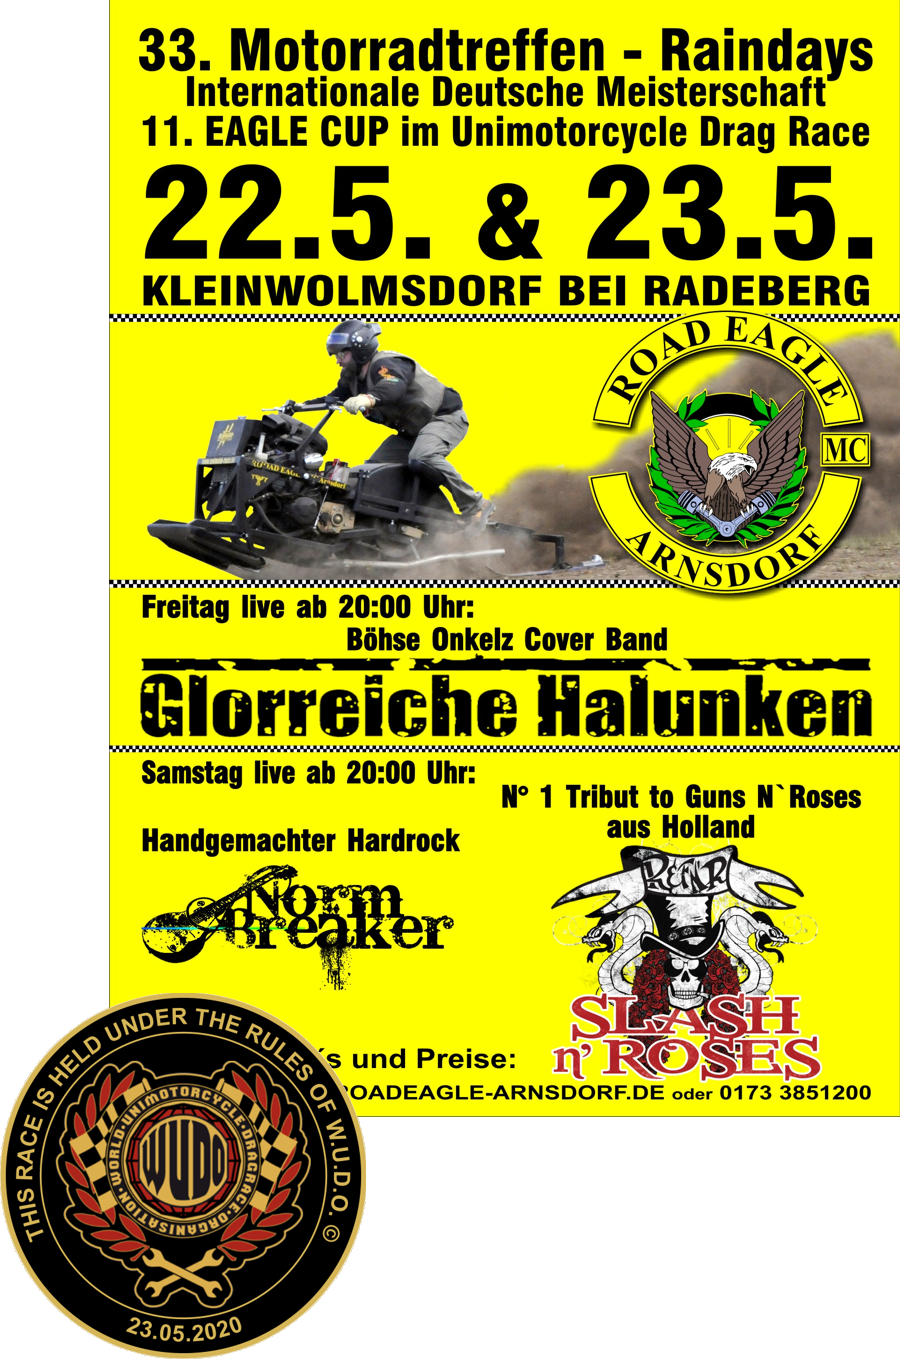 Internationale Deutsche Meisterschaft im Unimotorcycle Dragrace beim 11. Eagle Cup des Road Eagle MC Arnsdorf